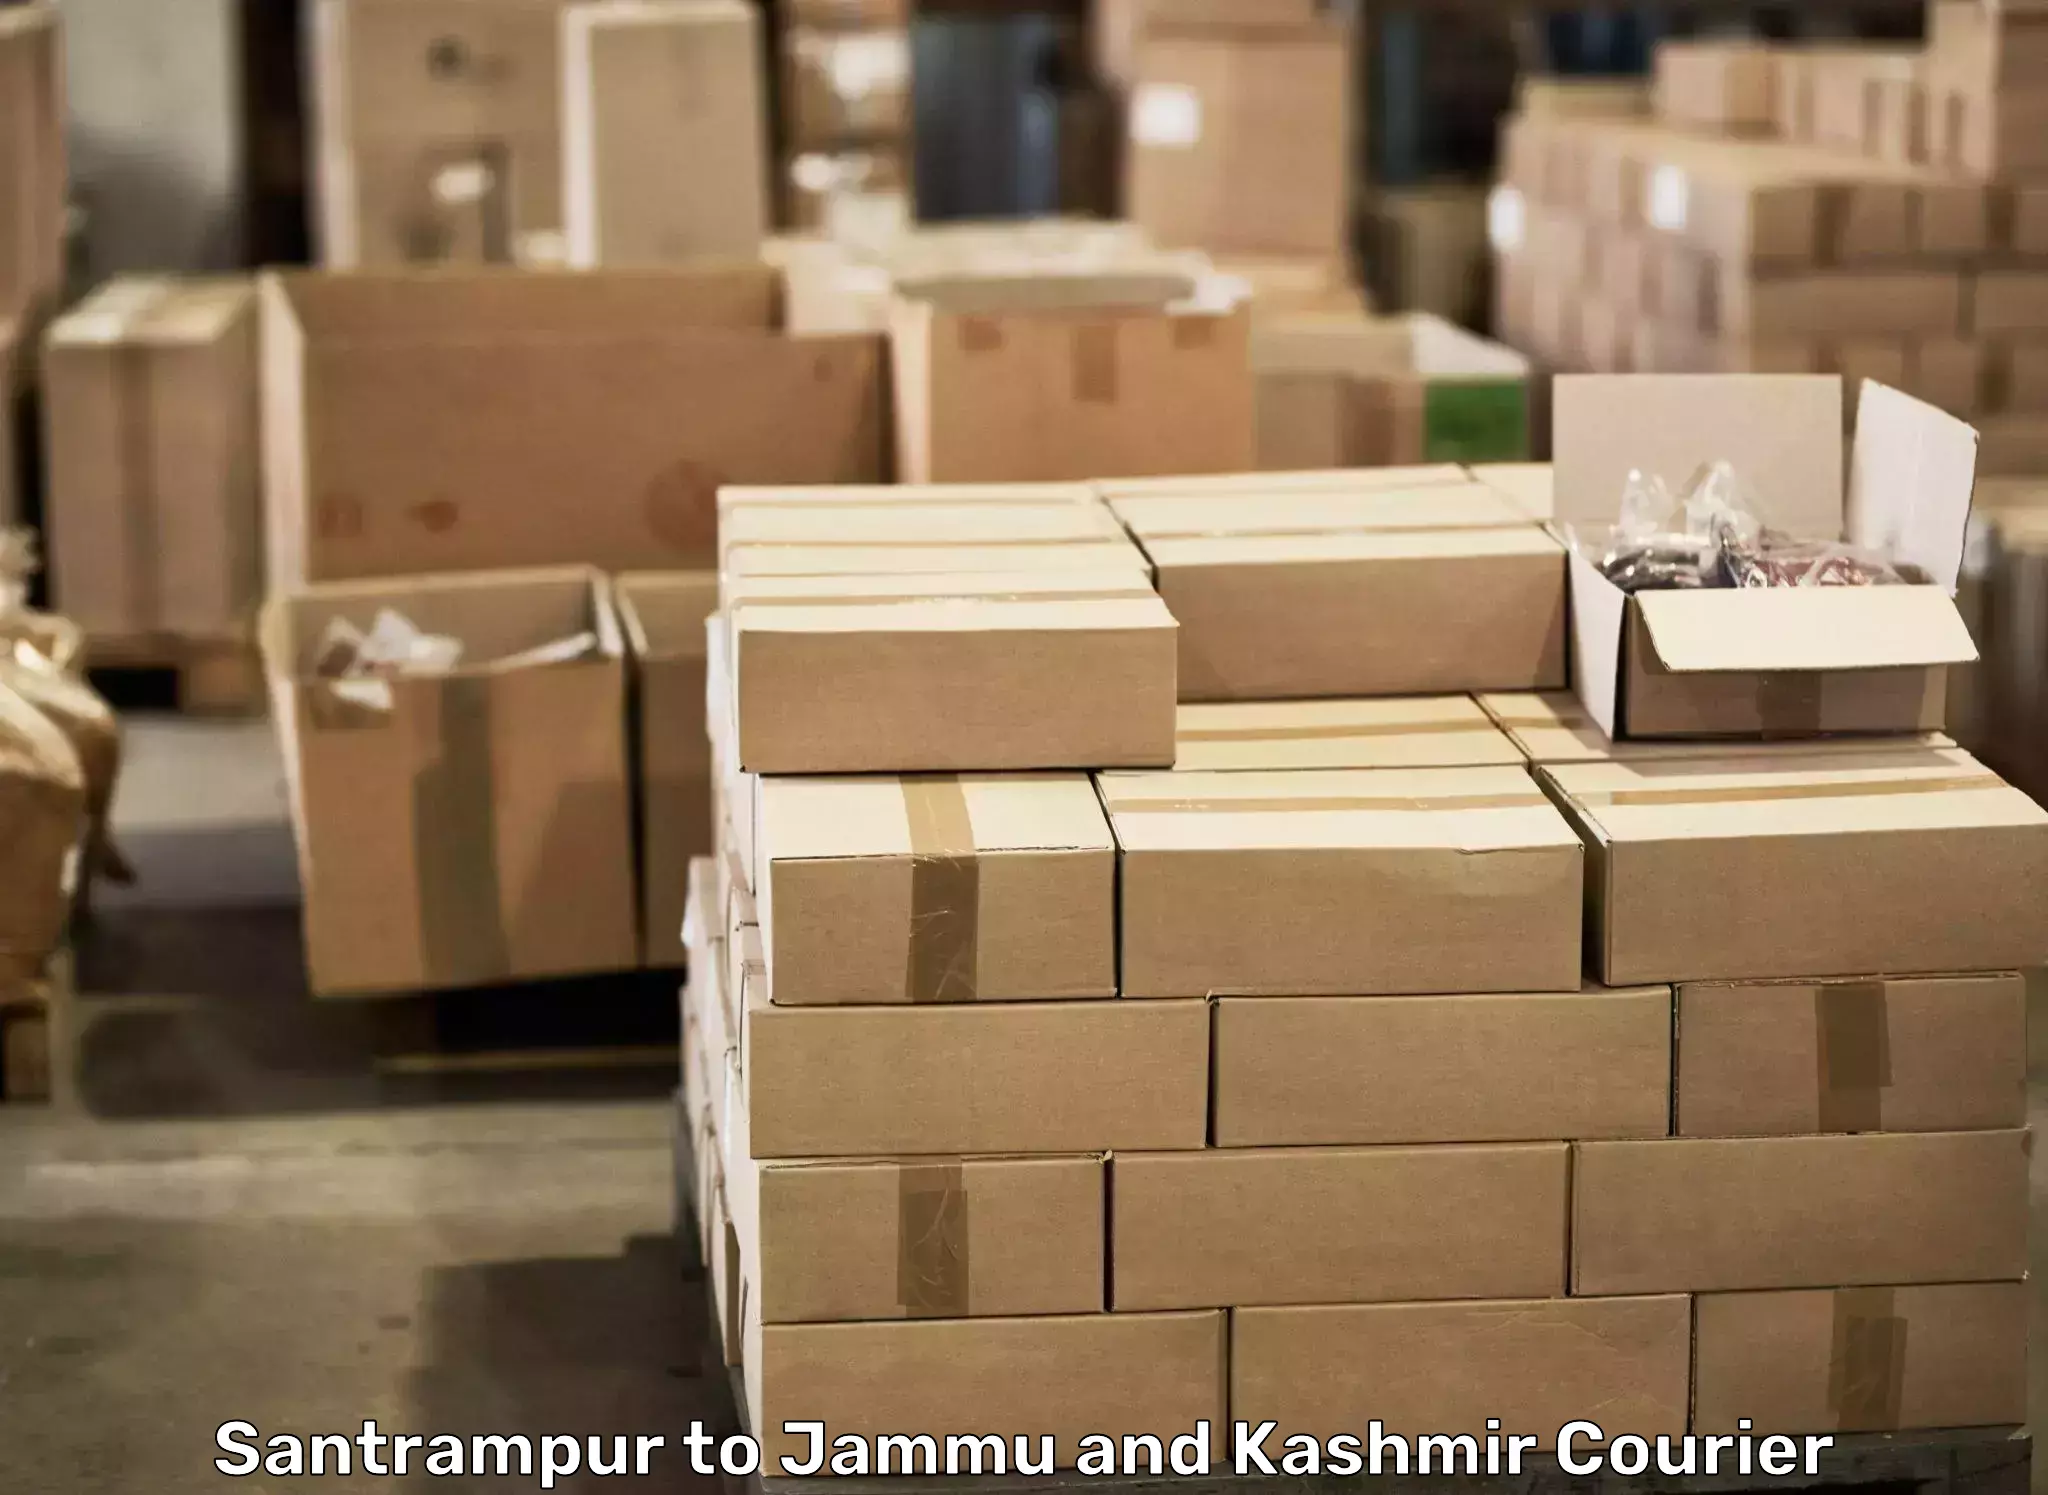 Door-to-door relocation services in Santrampur to IIT Jammu